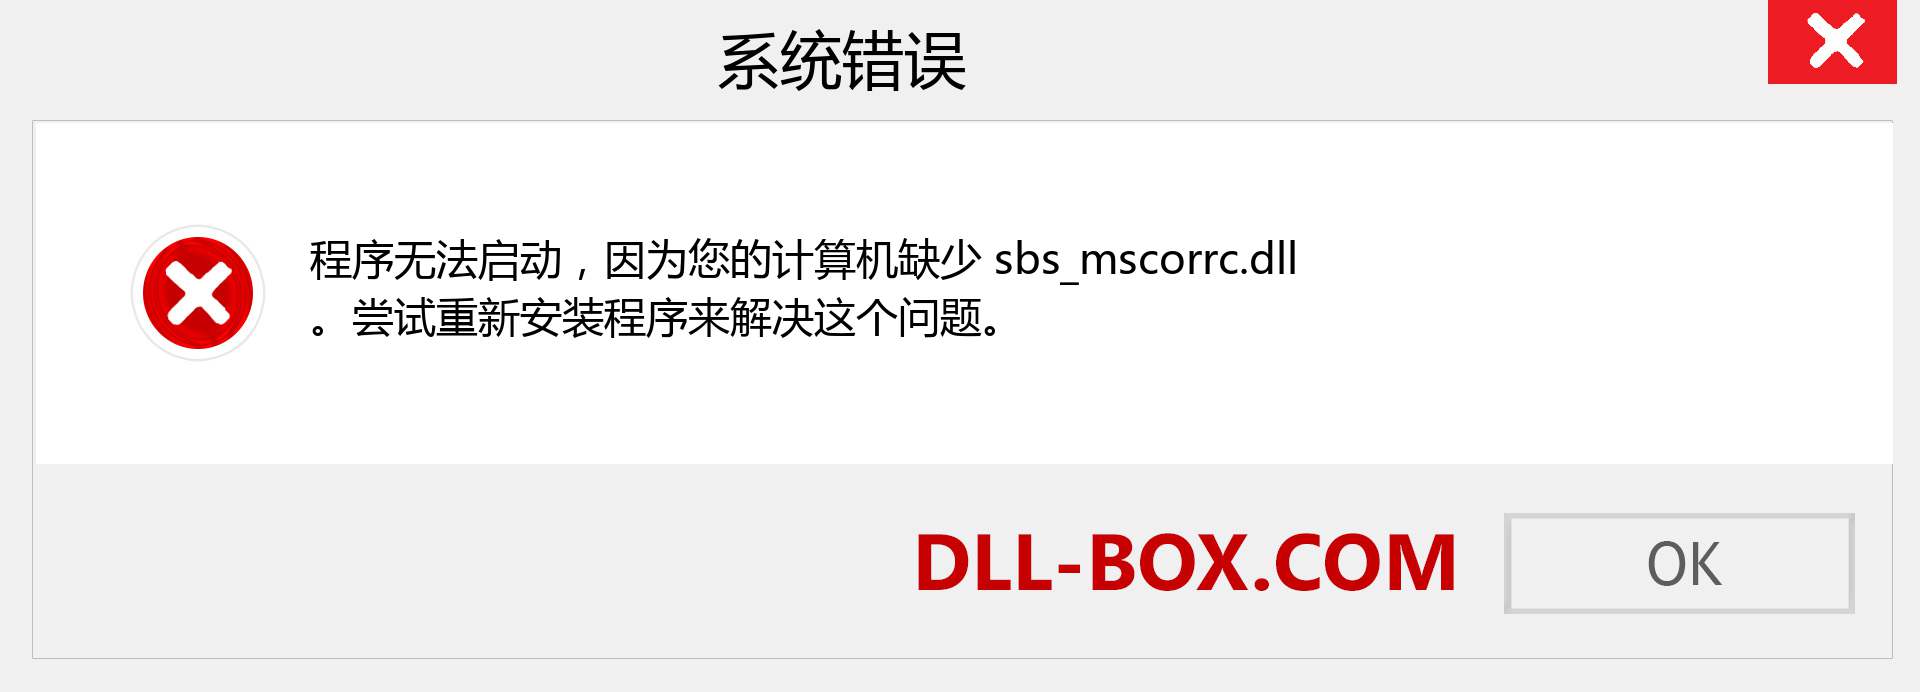 sbs_mscorrc.dll 文件丢失？。 适用于 Windows 7、8、10 的下载 - 修复 Windows、照片、图像上的 sbs_mscorrc dll 丢失错误